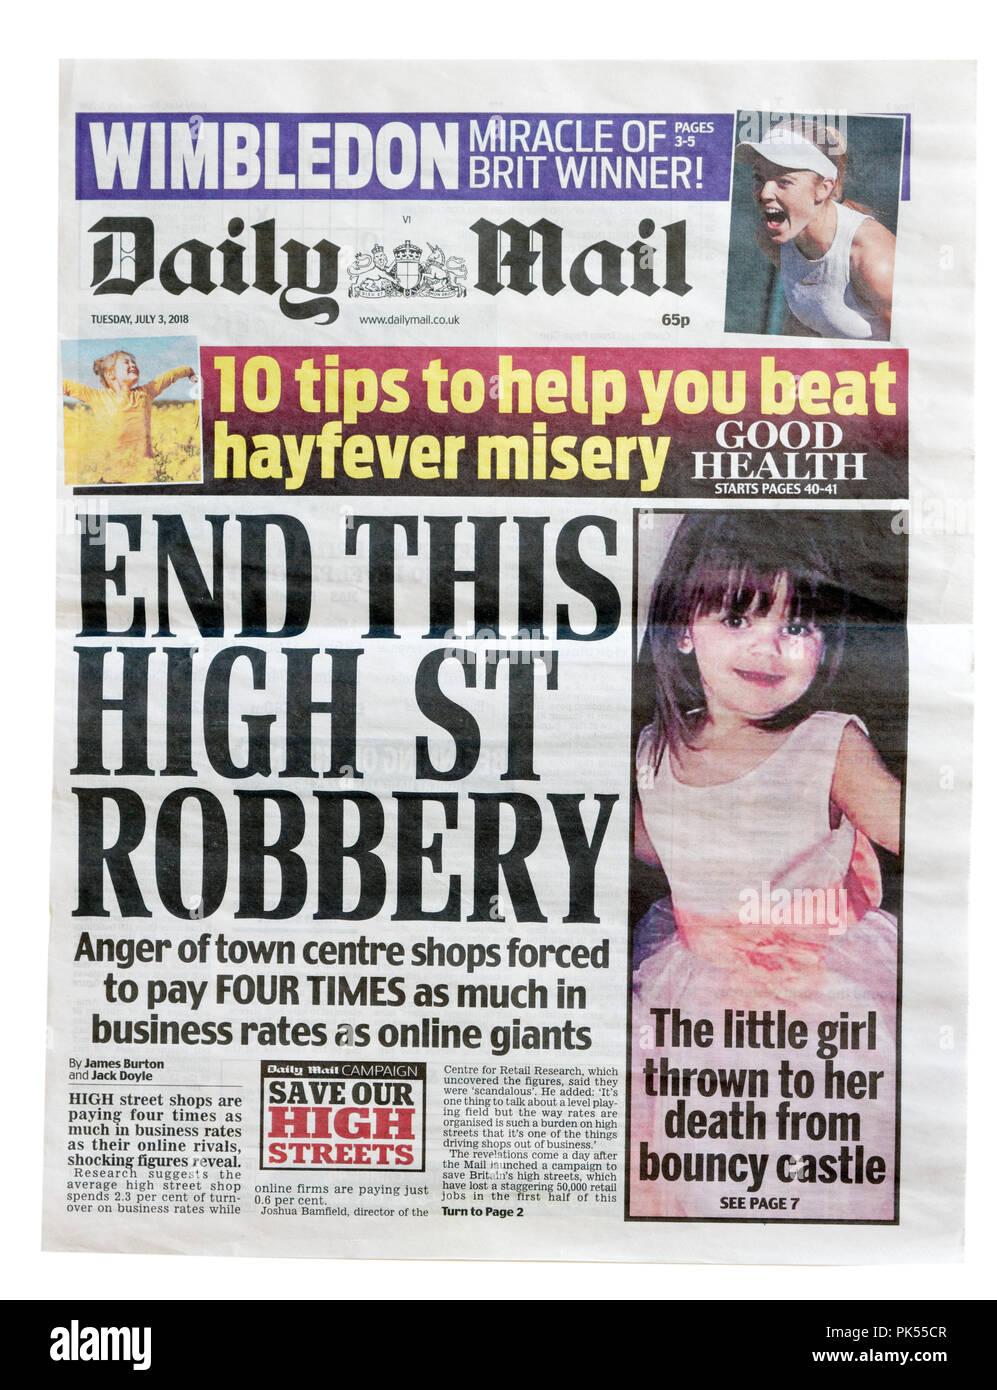 Pagina anteriore del Daily Mail con il titolo fine questo High Street rapina, circa la differenza tra le imposte versate da online e high street memorizza Foto Stock